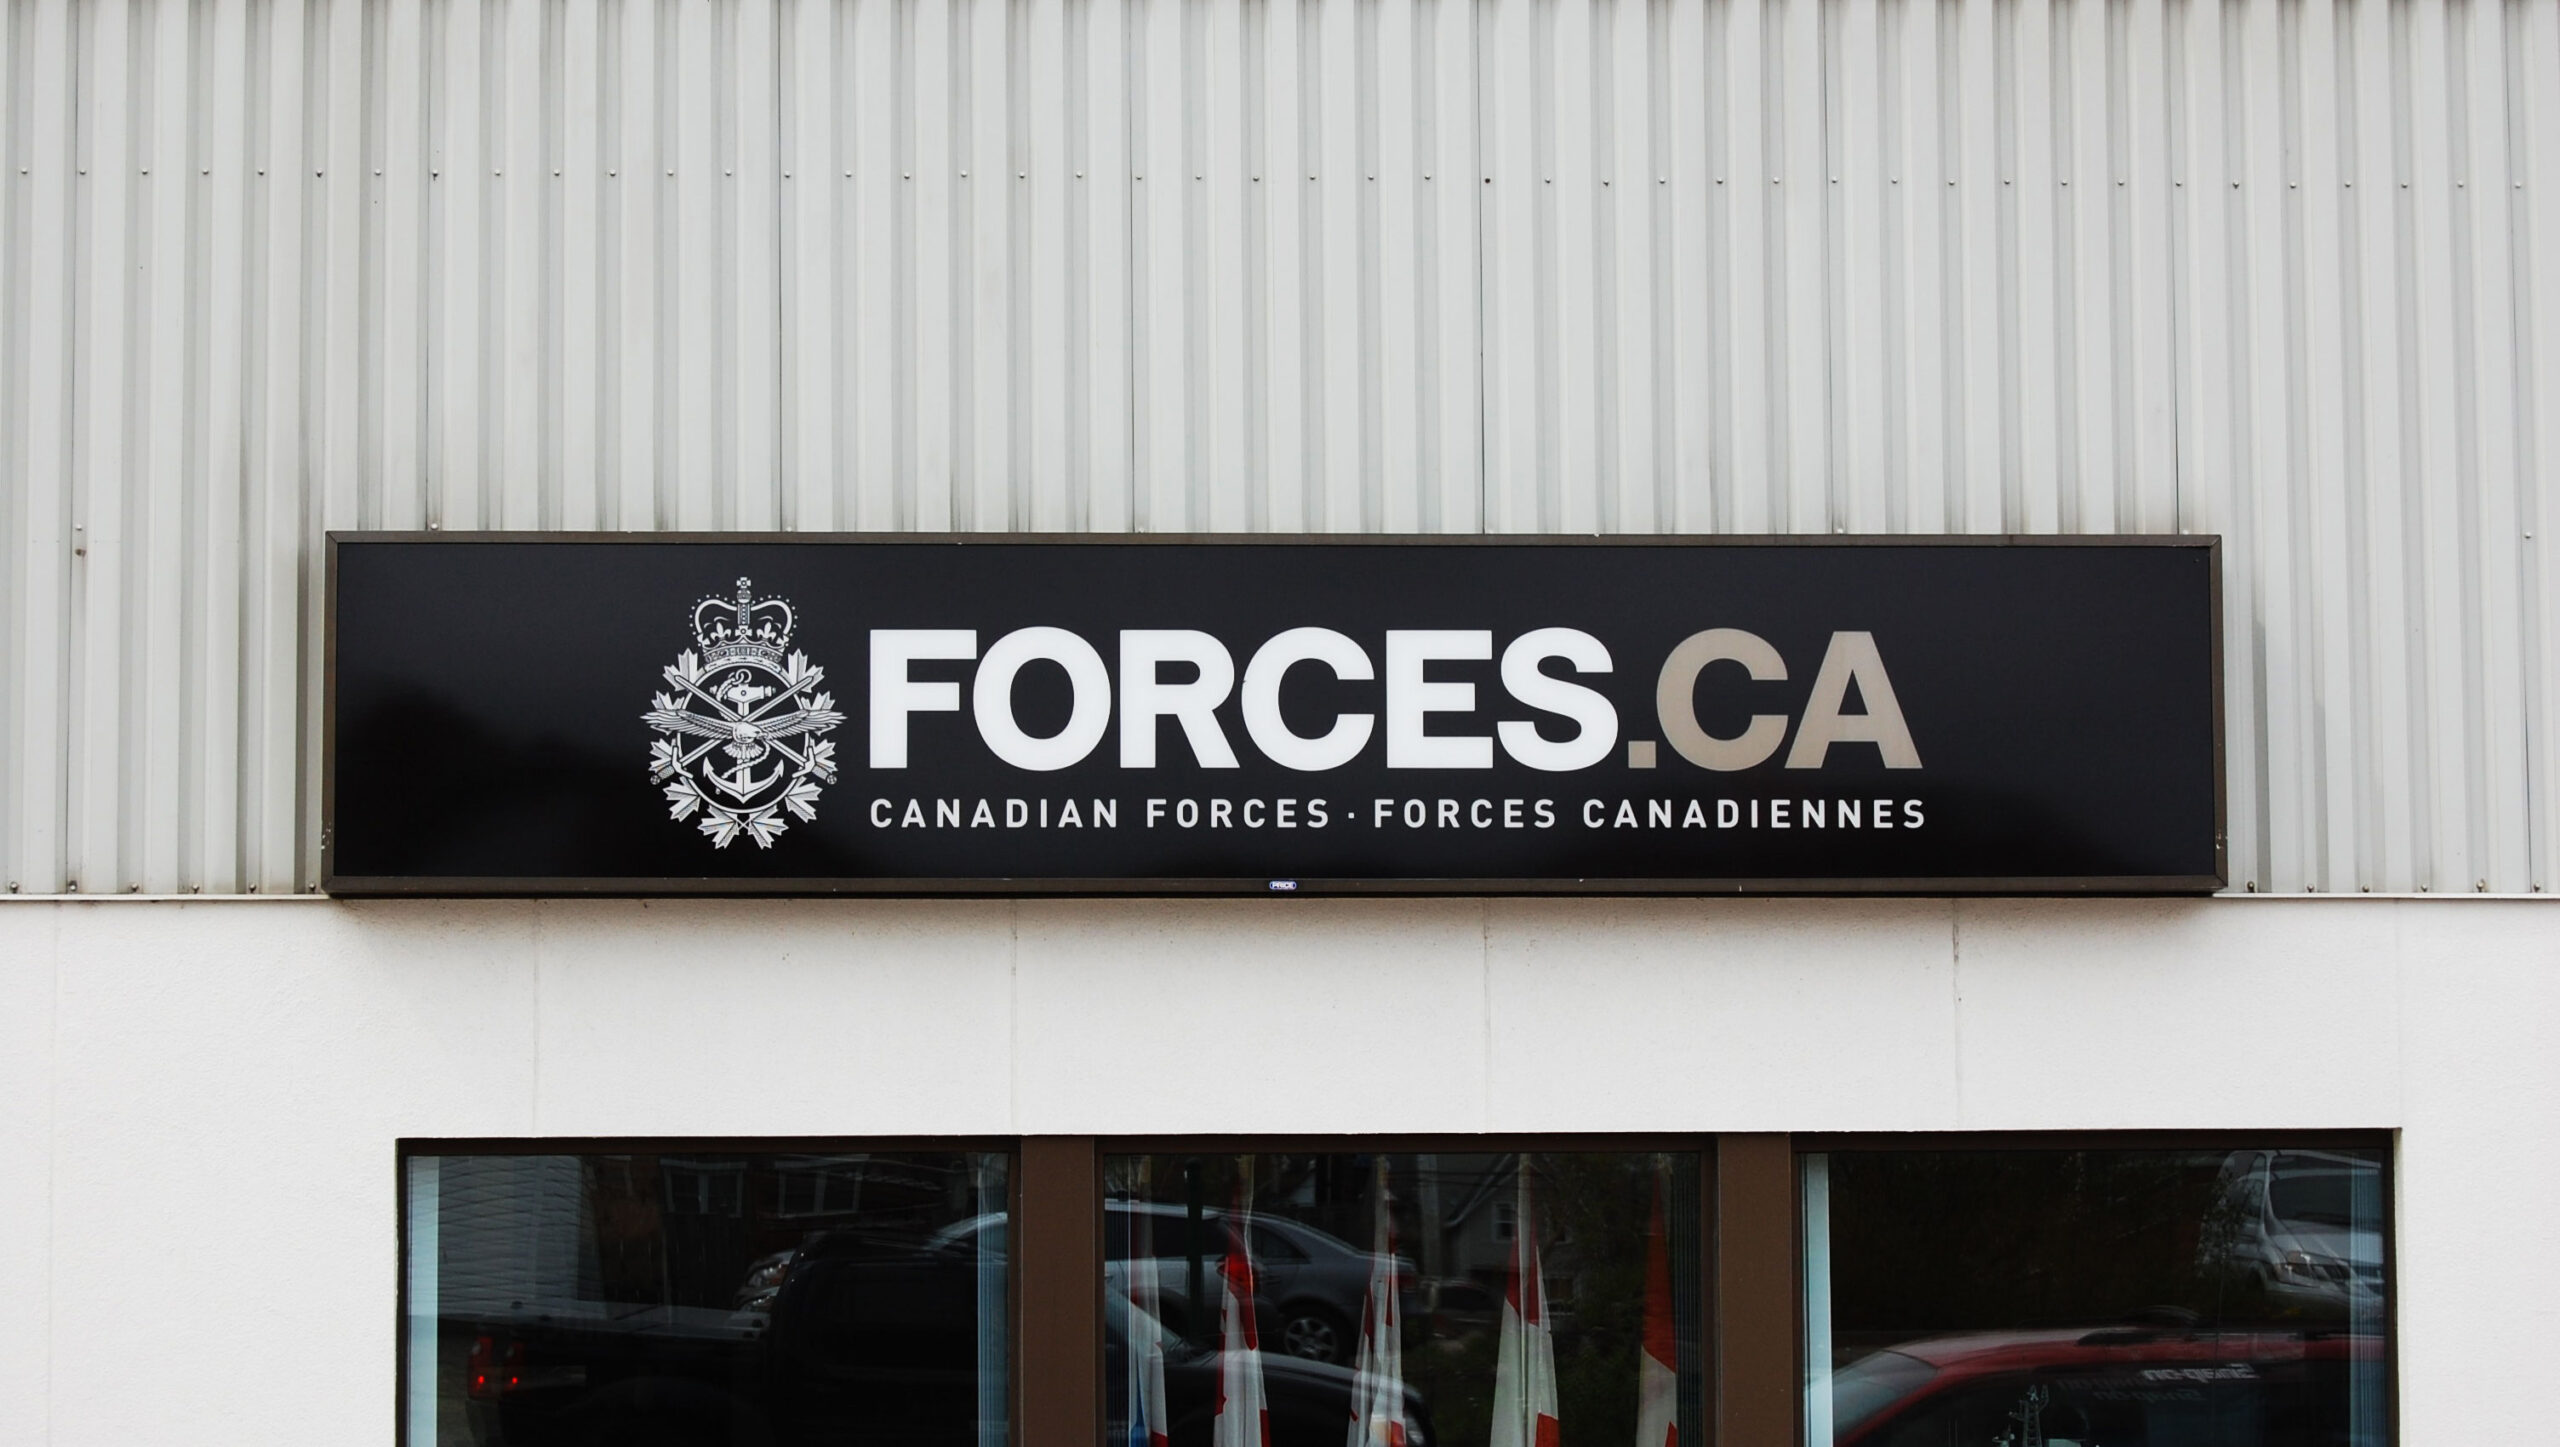 Forces.ca - Fascia Sign